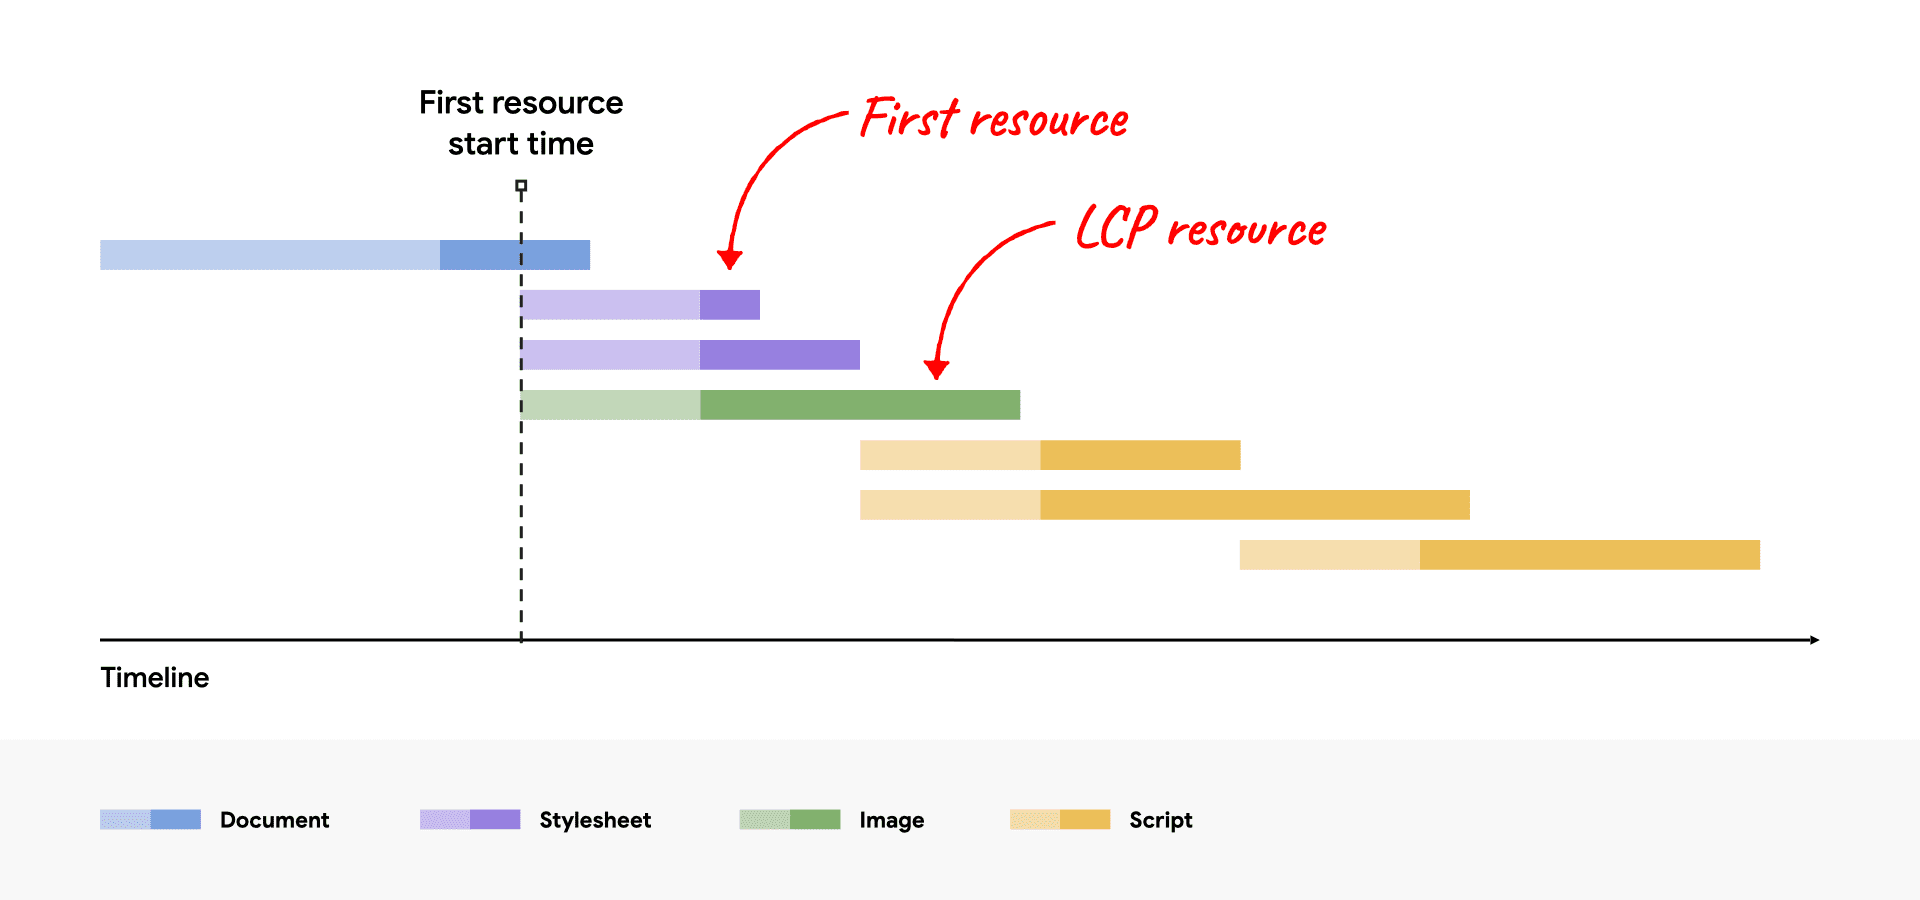 LCP リソースが最初のリソースと同時に開始されるようになったネットワークのウォーターフォール図